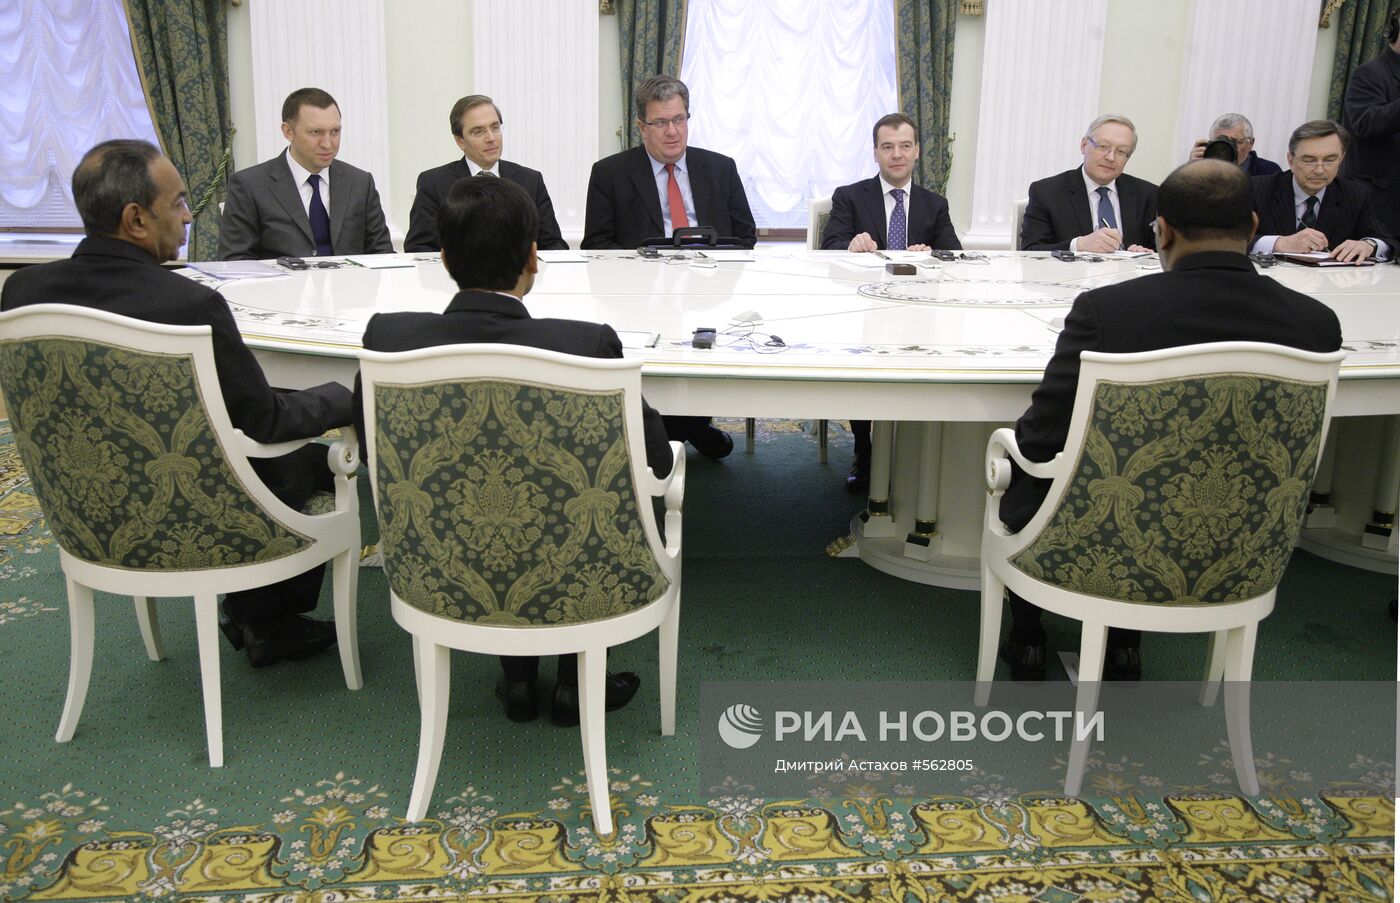 Д.Медведев провел встречу с Б.Джагдео